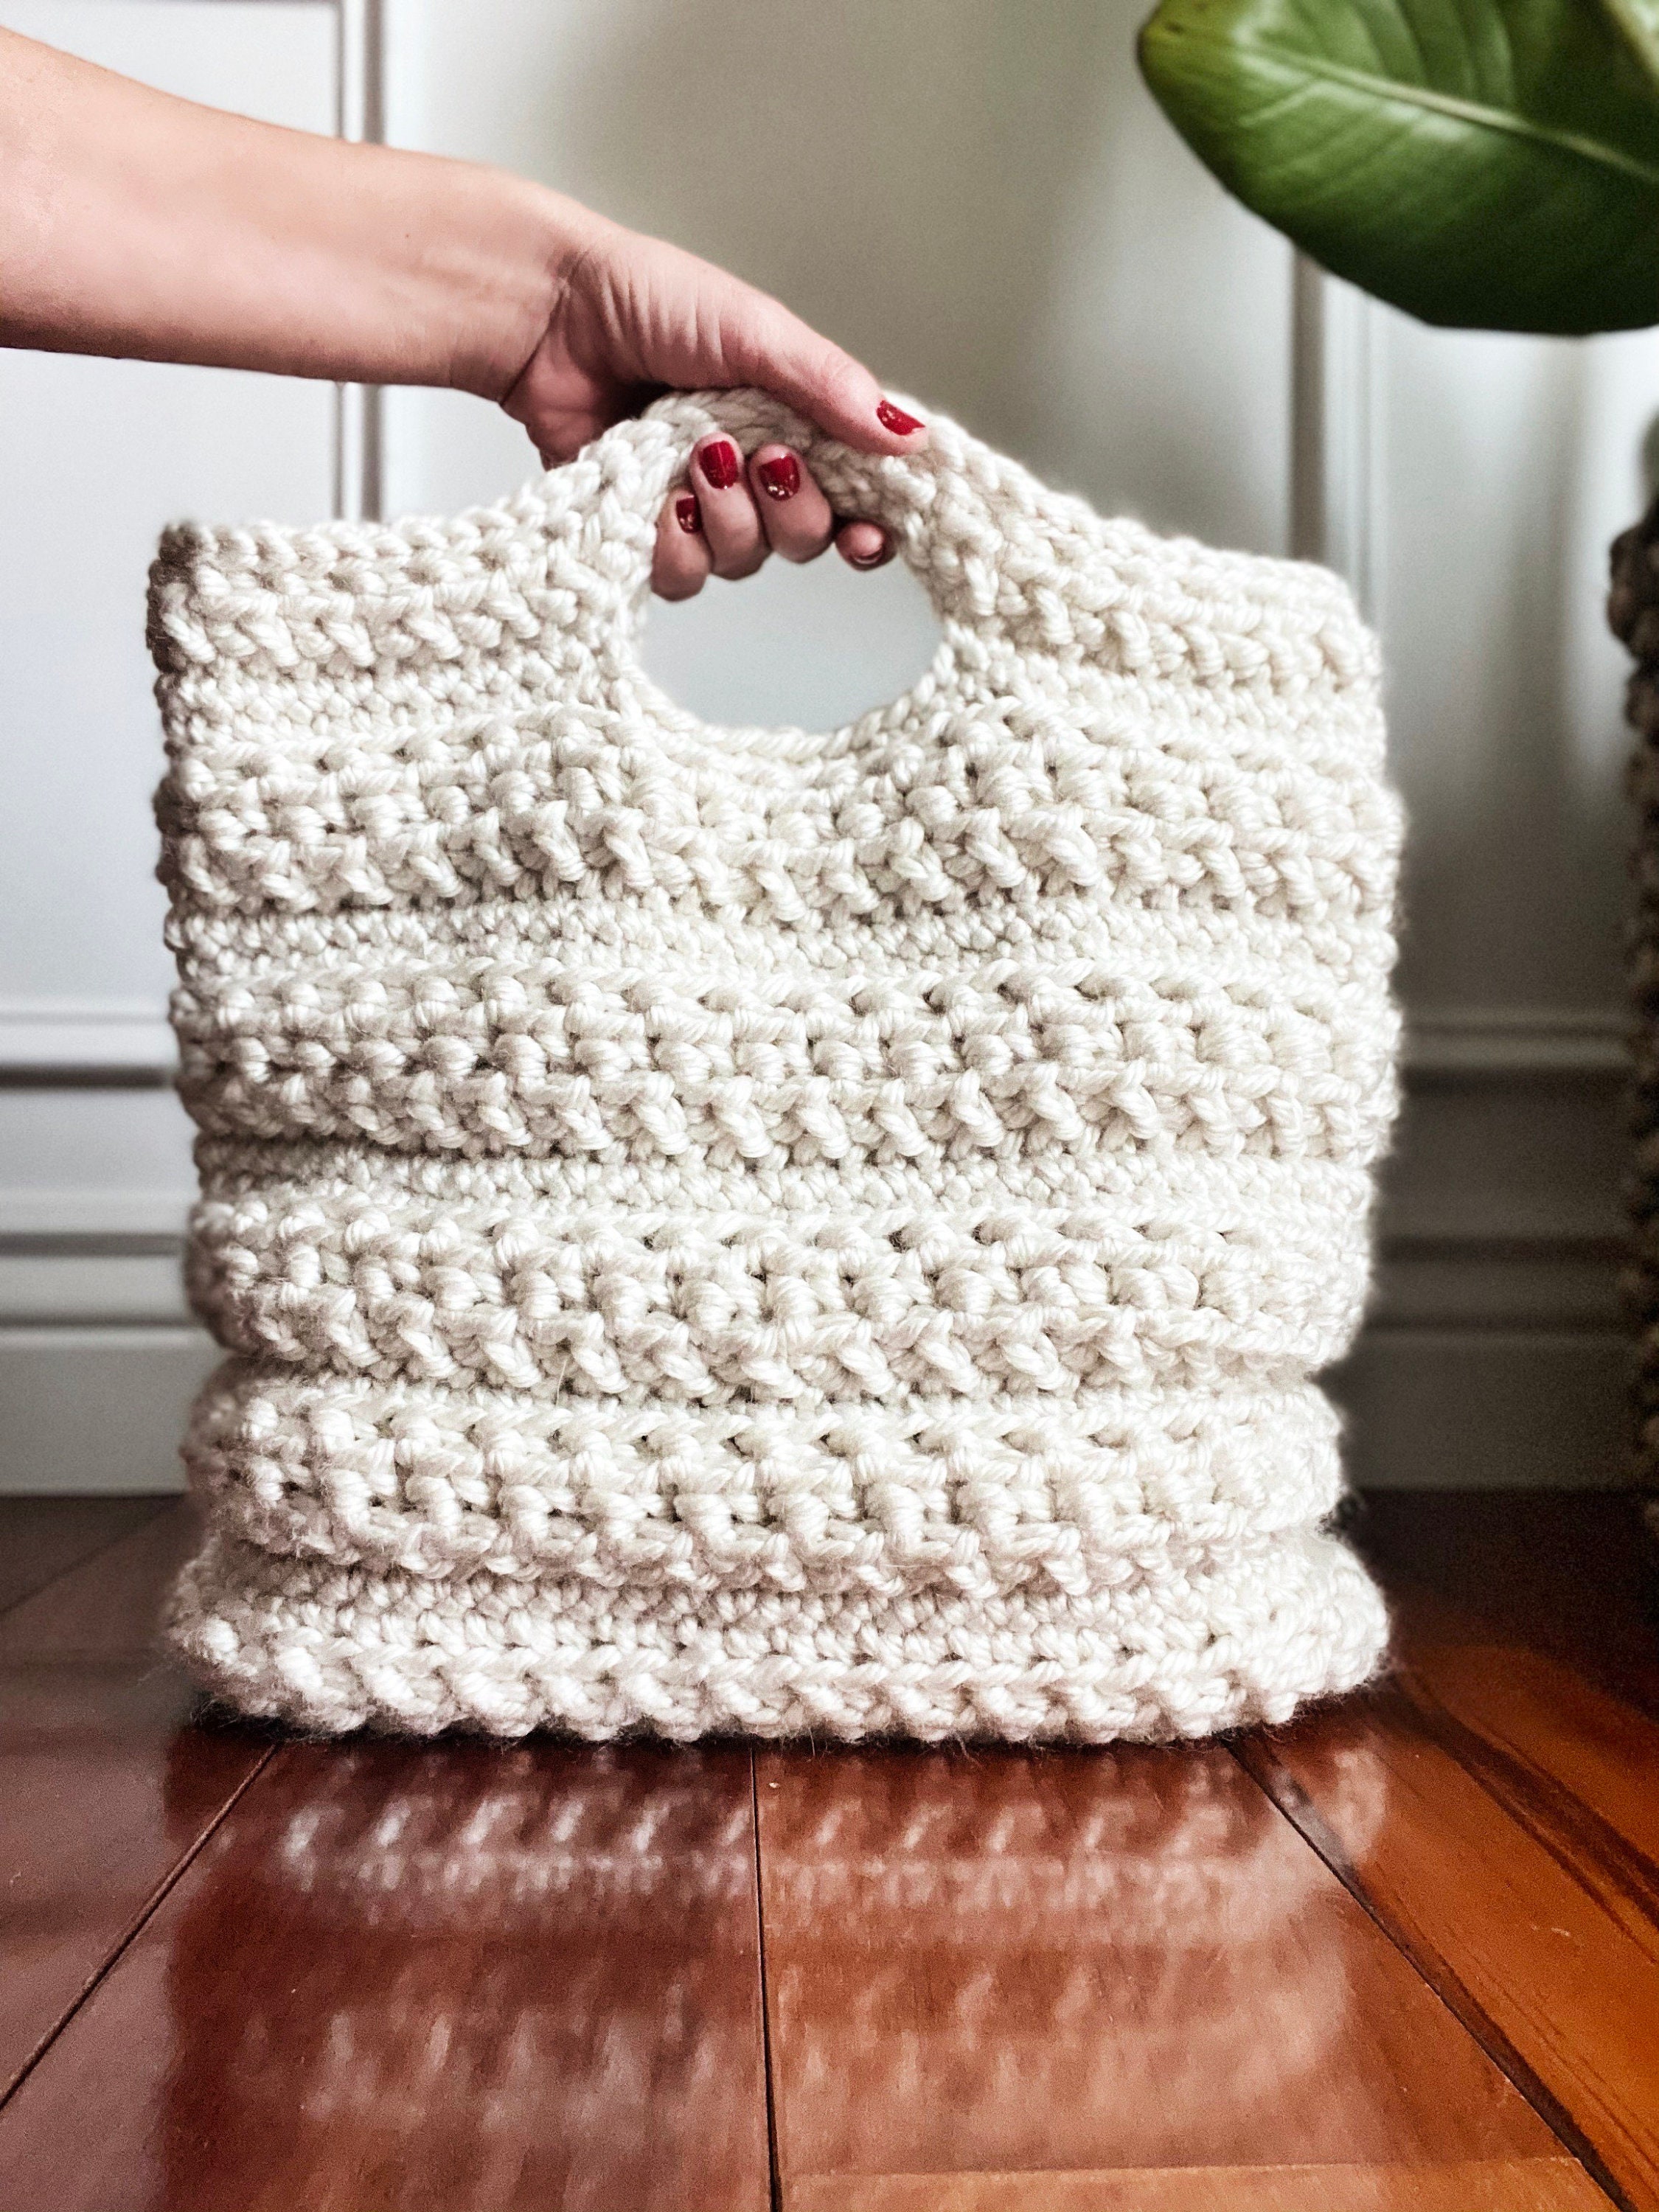 CROCHET PATTERN, the Wander Crochet Tote in 2 Sizes, Crochet Bag